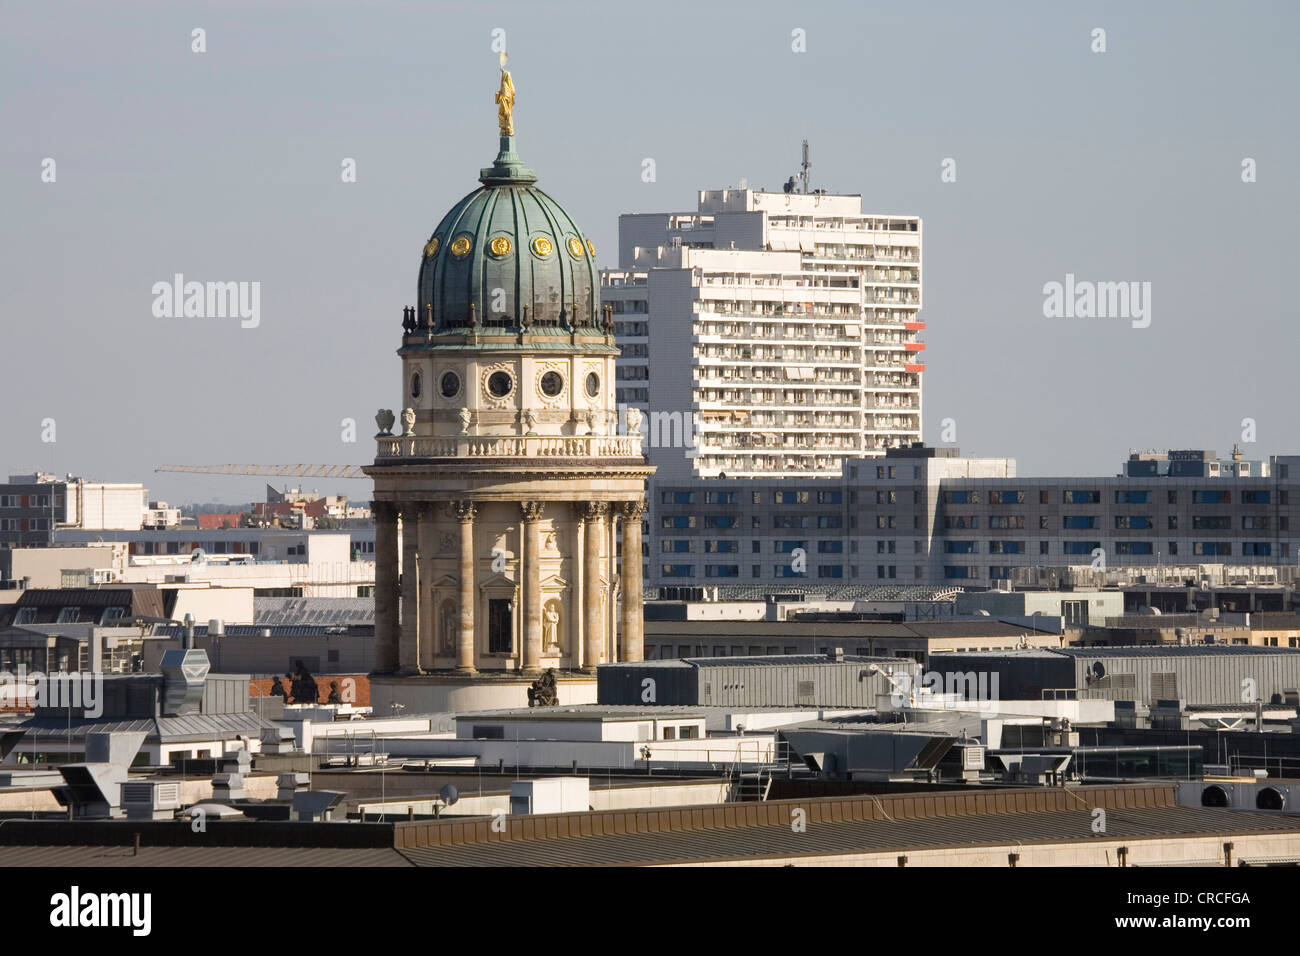 Vue de la Deutscher Dom ou Cathédrale allemande sur la place Gendarmenmarkt, Berlin, Germany, Europe Banque D'Images